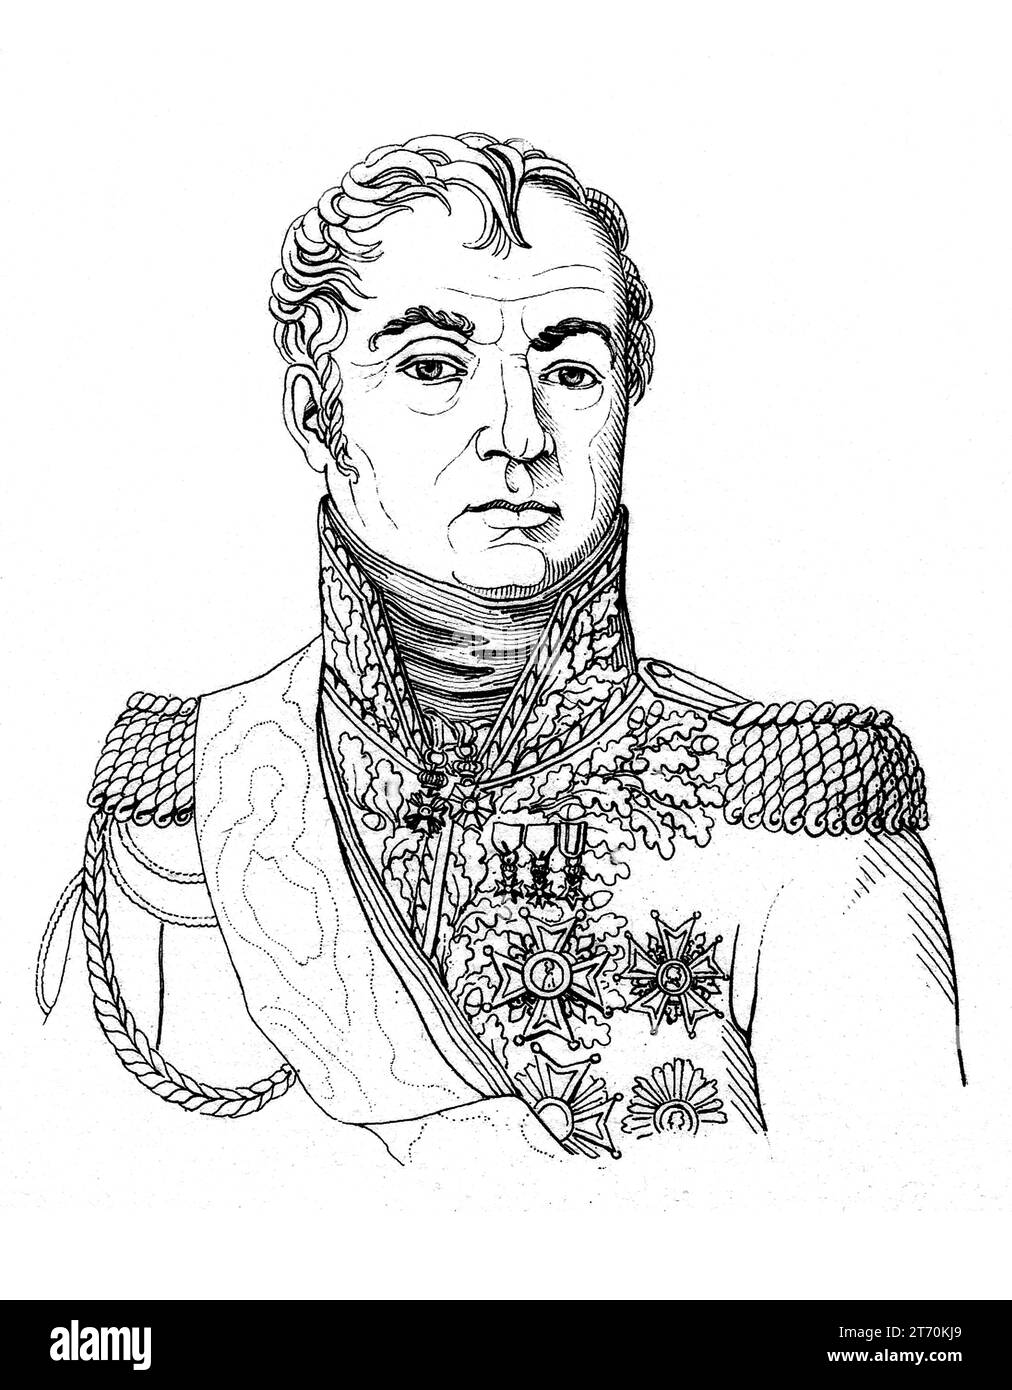 1823 CA, Parigi, FRANCIA: Il generale francese NICOLAS CHARLES VICTOR OUDINOT ( 1791 - 1863 ) duca di REGGIO , soldato, statista e diplomatico . Inviato da Napoleone III BONAPARTE, non ancora imperatore, per sopprimere la Repubblica Romana nel 1849, guidato da Giuseppe Mazzini. Incisione di Boilly , Parigi . - RITRATTO - RITRATTO - GENERALE di FRANCIA - Duca - nobili - nobiltà francese - nobiltà francese - SECONDO IMPERO - Repubblica Romana - BUONAPARTE - Bonapart - prima guerra d'indipendenza italiana - ASSEDIO DI ROMA - RISORGIMENTO - STORIA - FOTO STORICHE - medaglie - ILLUSTRAZIONE - ILLUSTRAZIONE Foto Stock